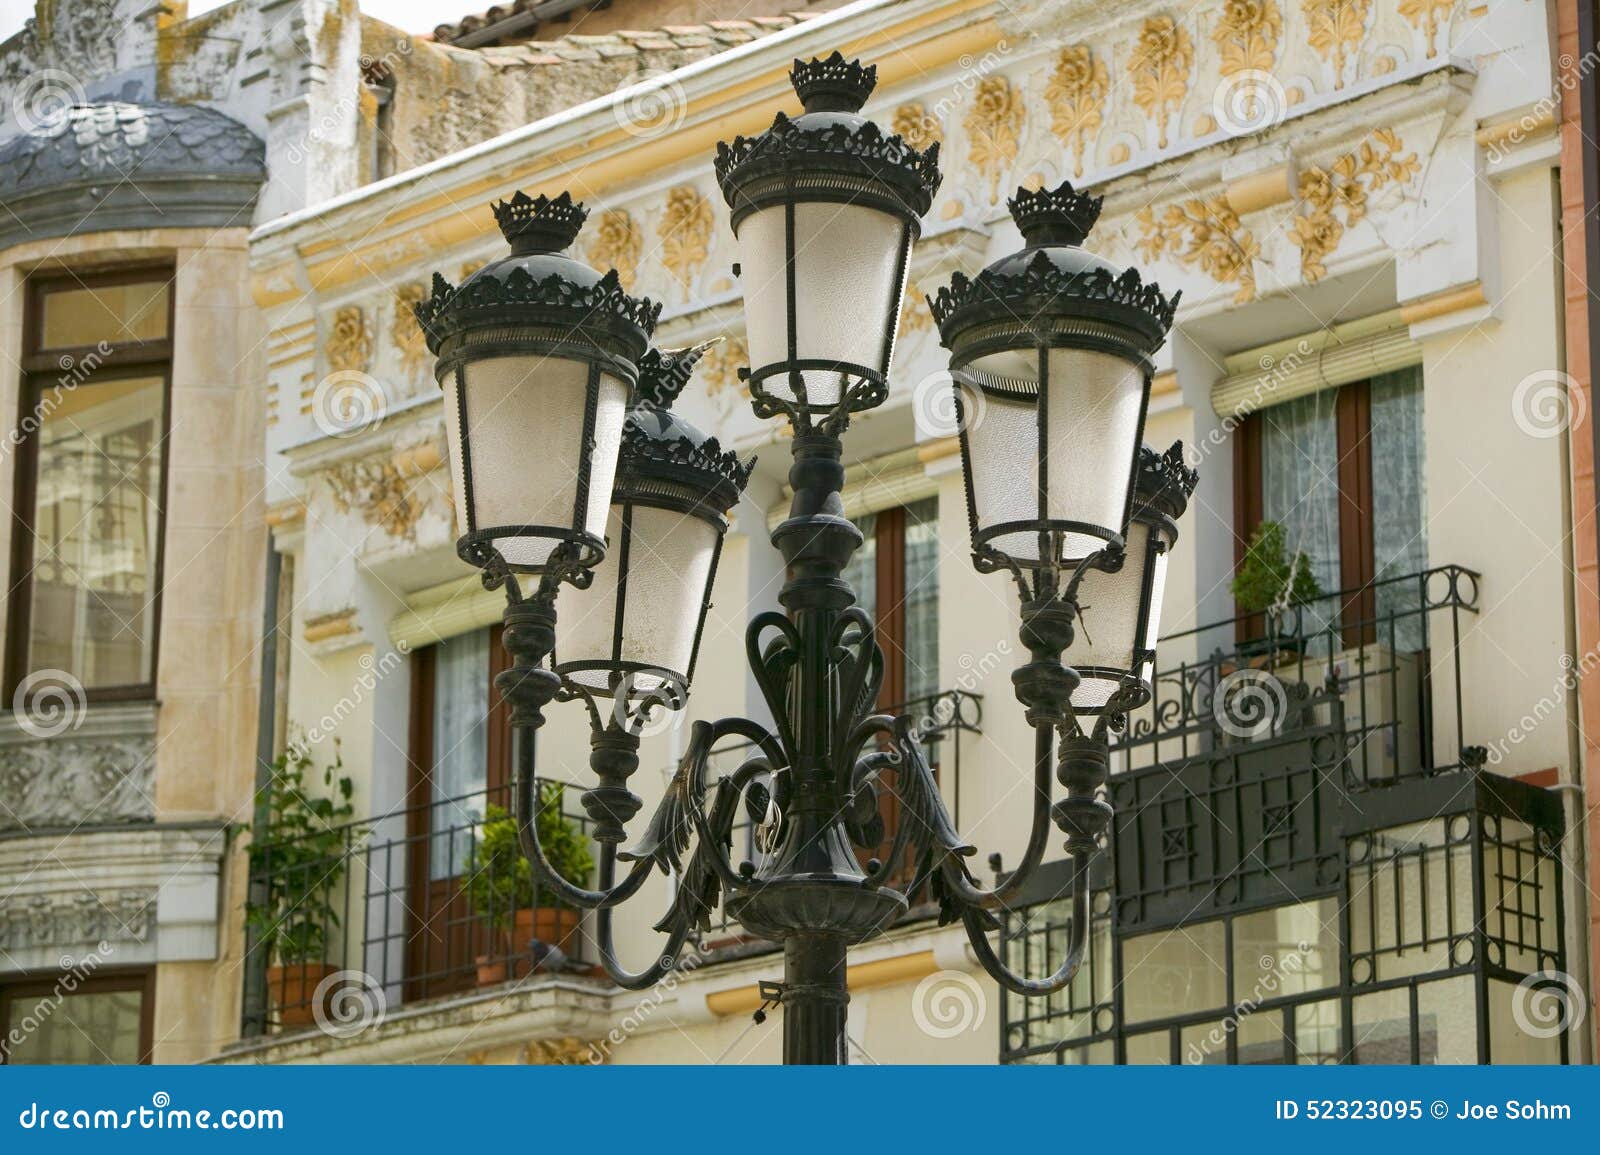 Rod Iron Street Lamps of Avila Spain, an Old Castilian Spanish Village ...